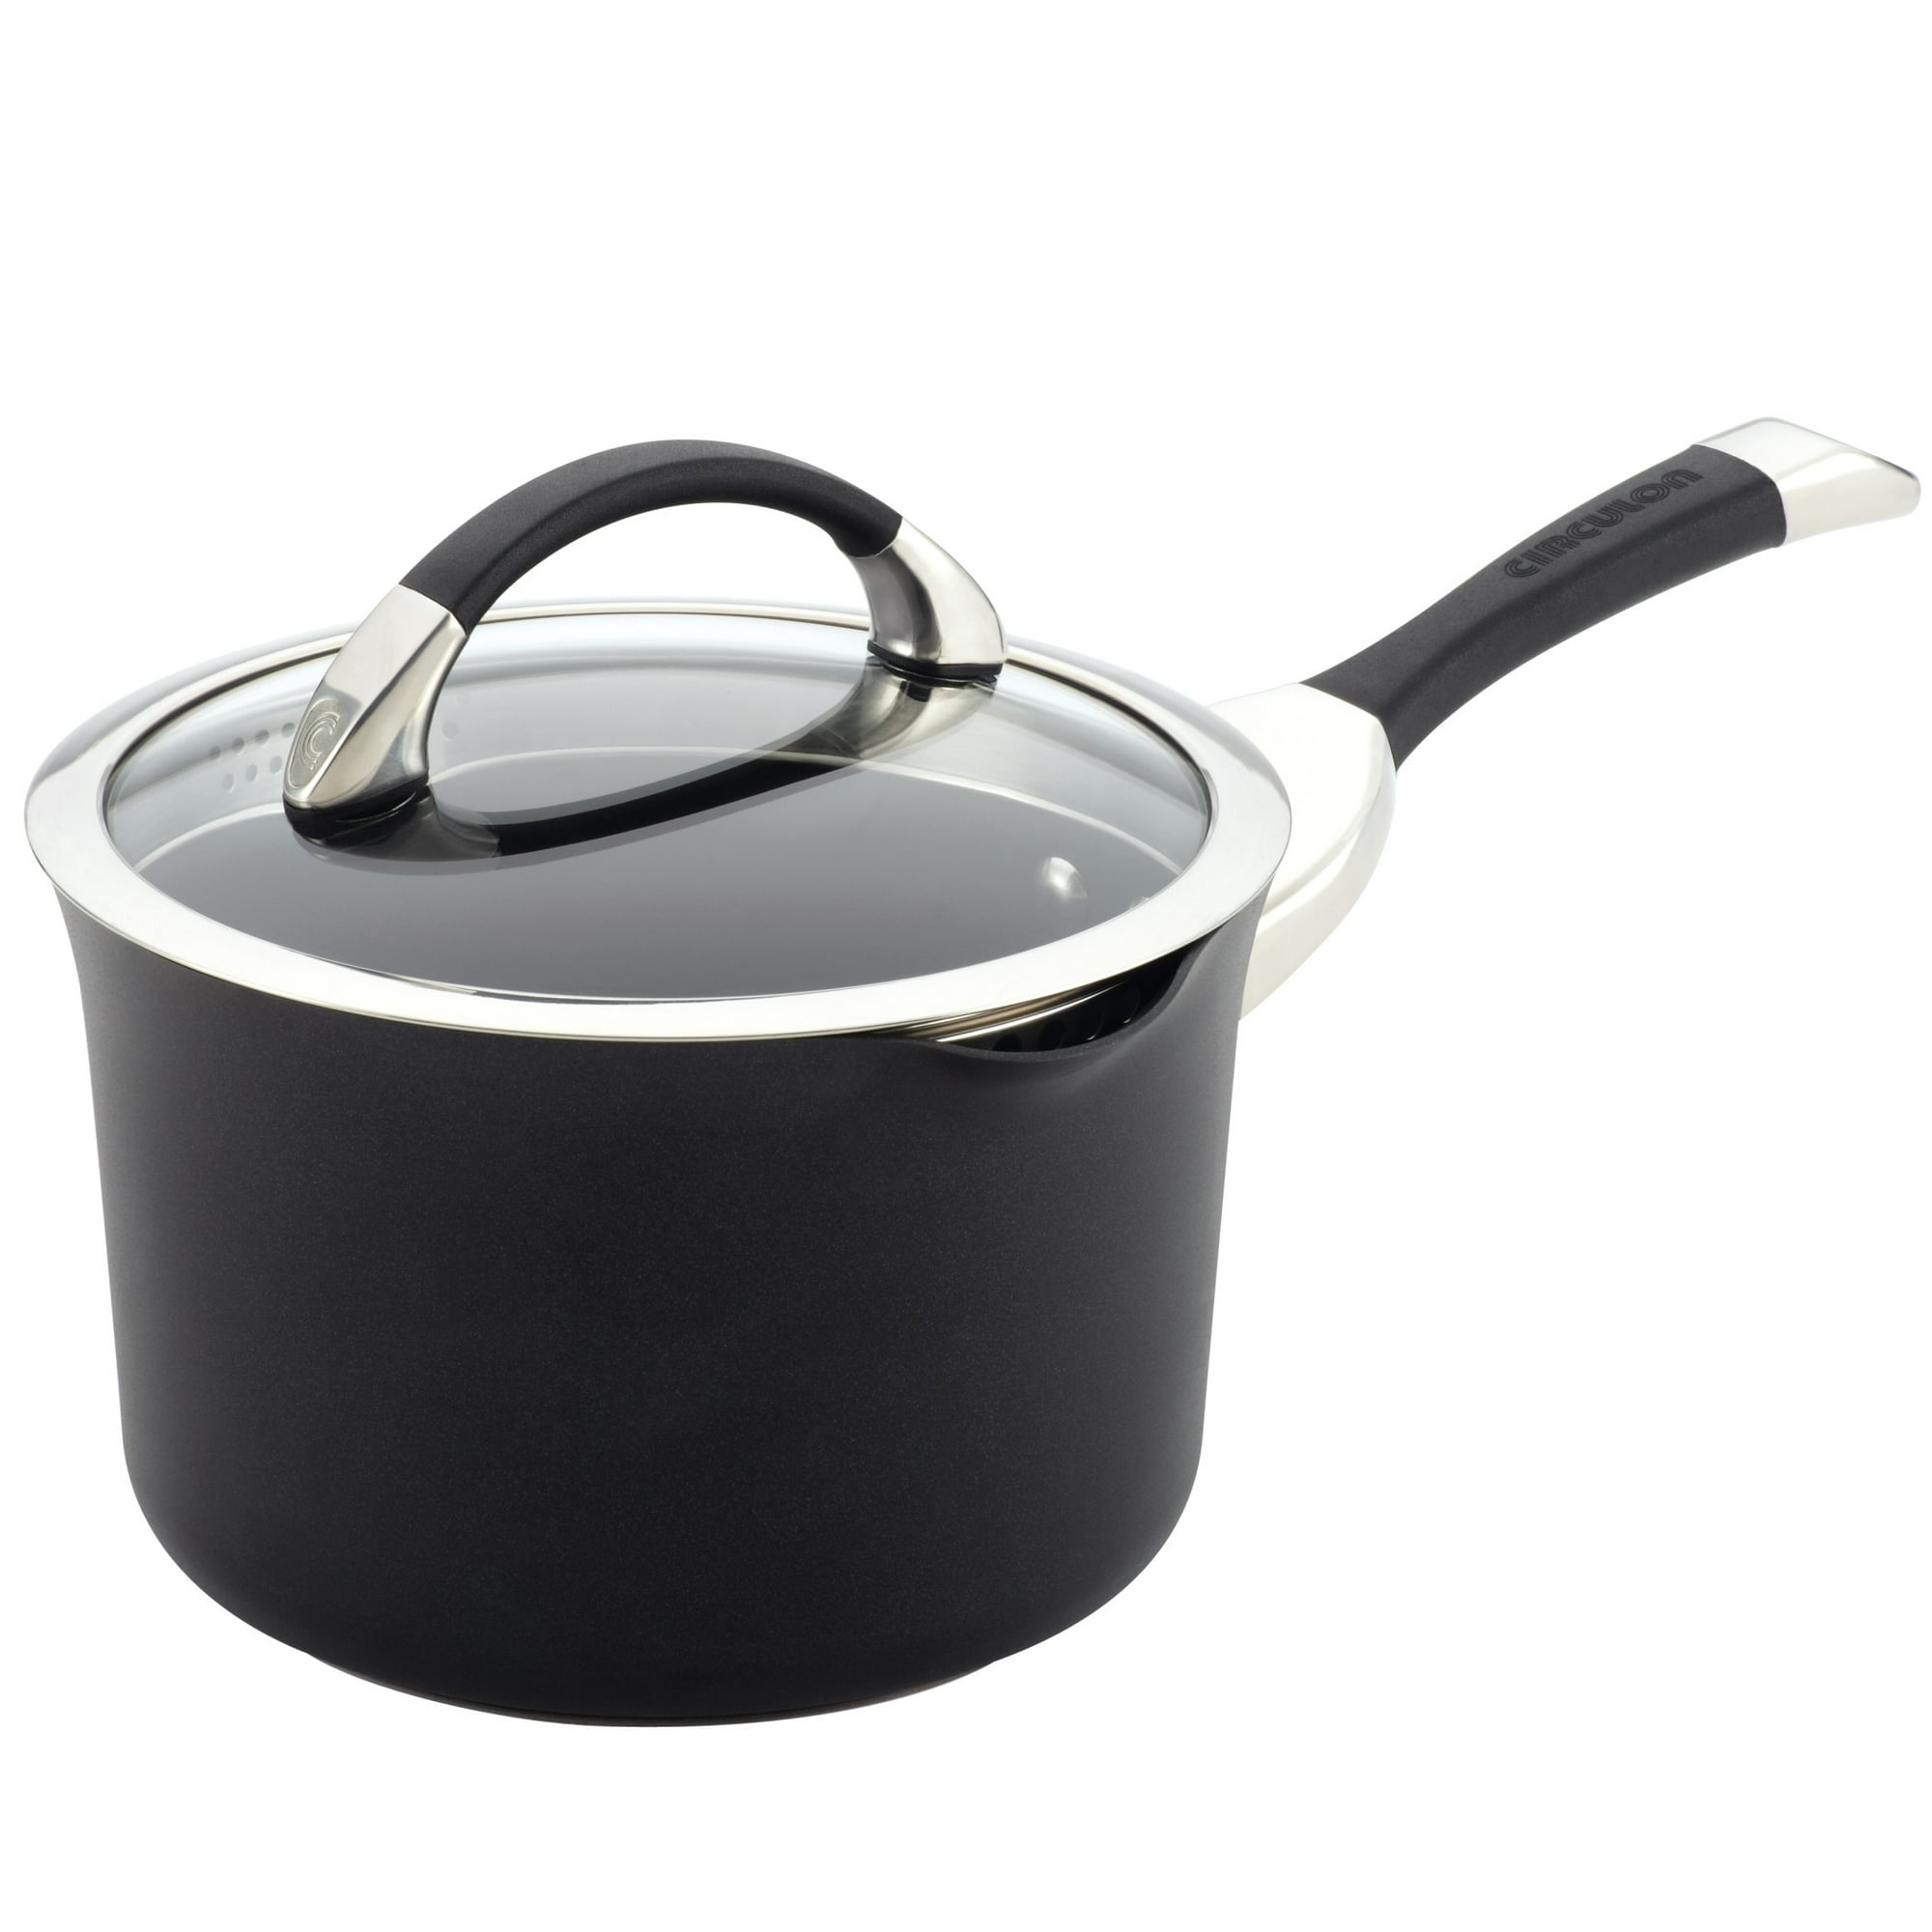 Farberware 3-Quart Aluminum Non-Stick Straining Saucepan With Lid, Black